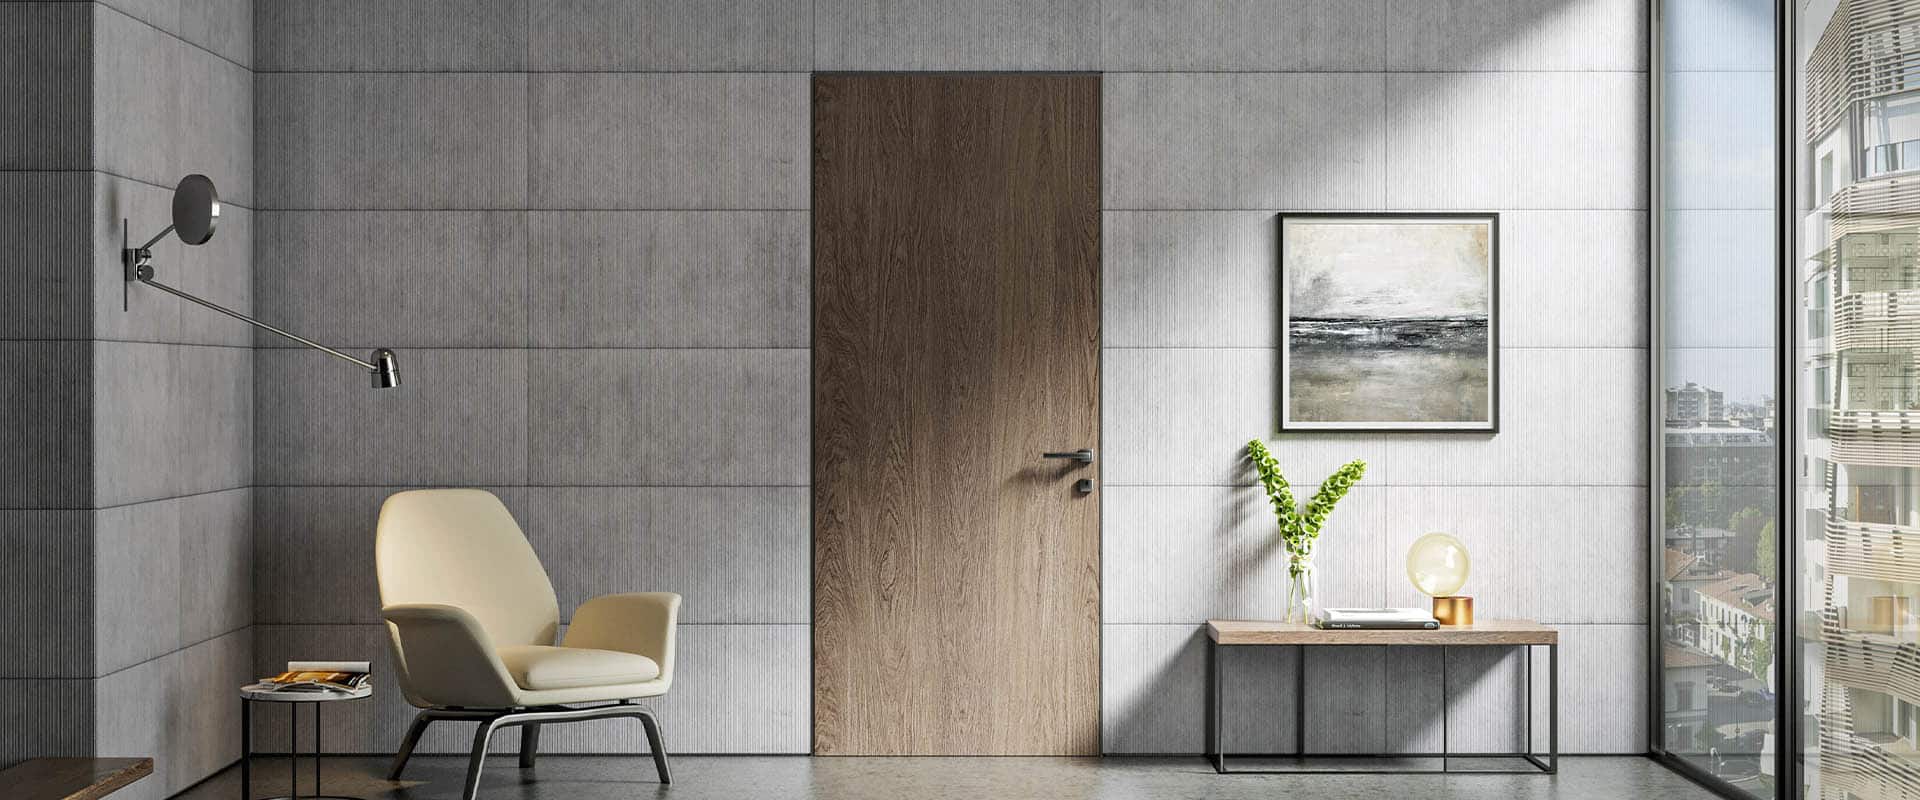 Gamme Comfort : Porte d'intérieur coulissante en bois – Batiproduit